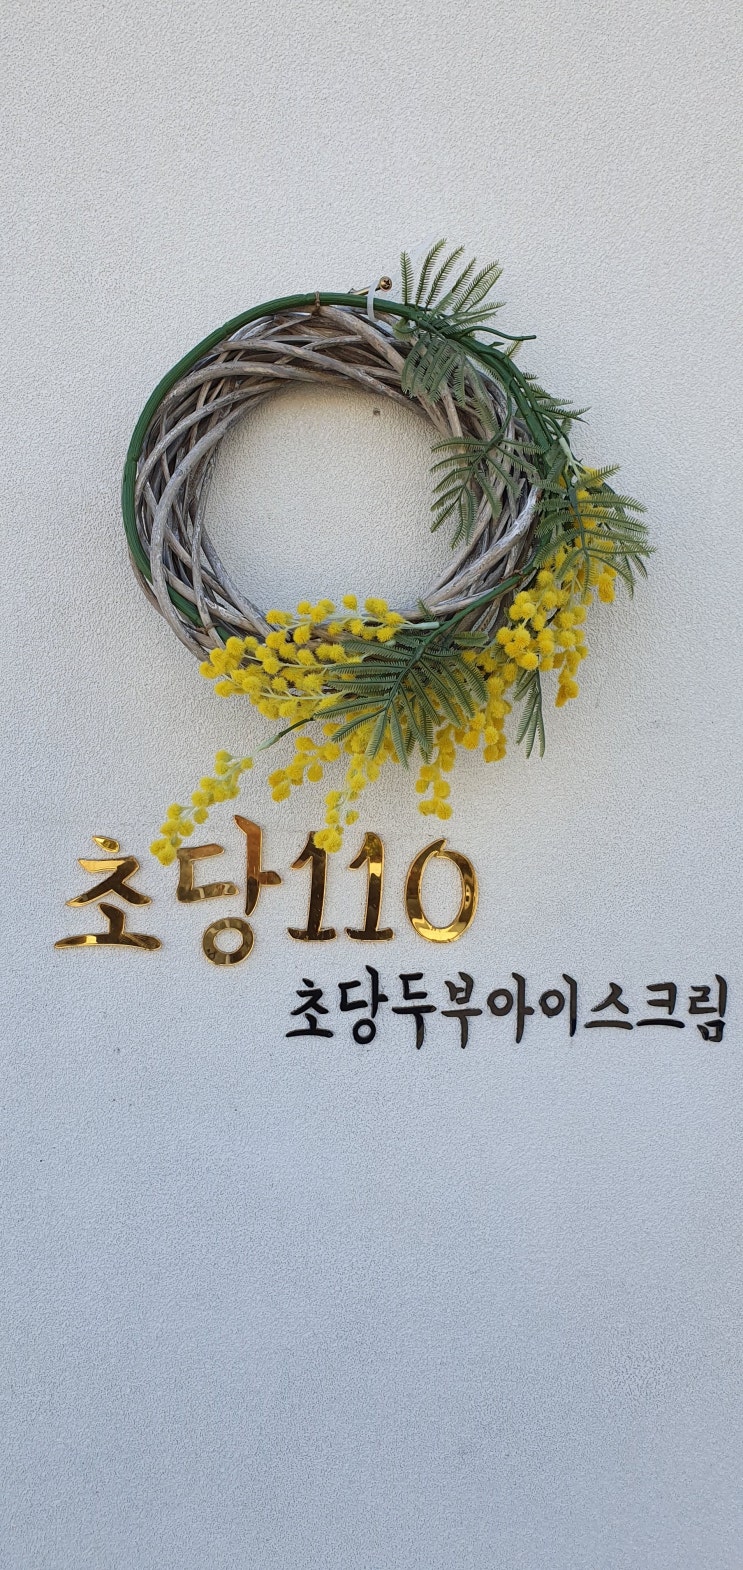 강릉 맛집 가볼만한 곳 농촌순두부 & 초당 110 초당두부아이스크림